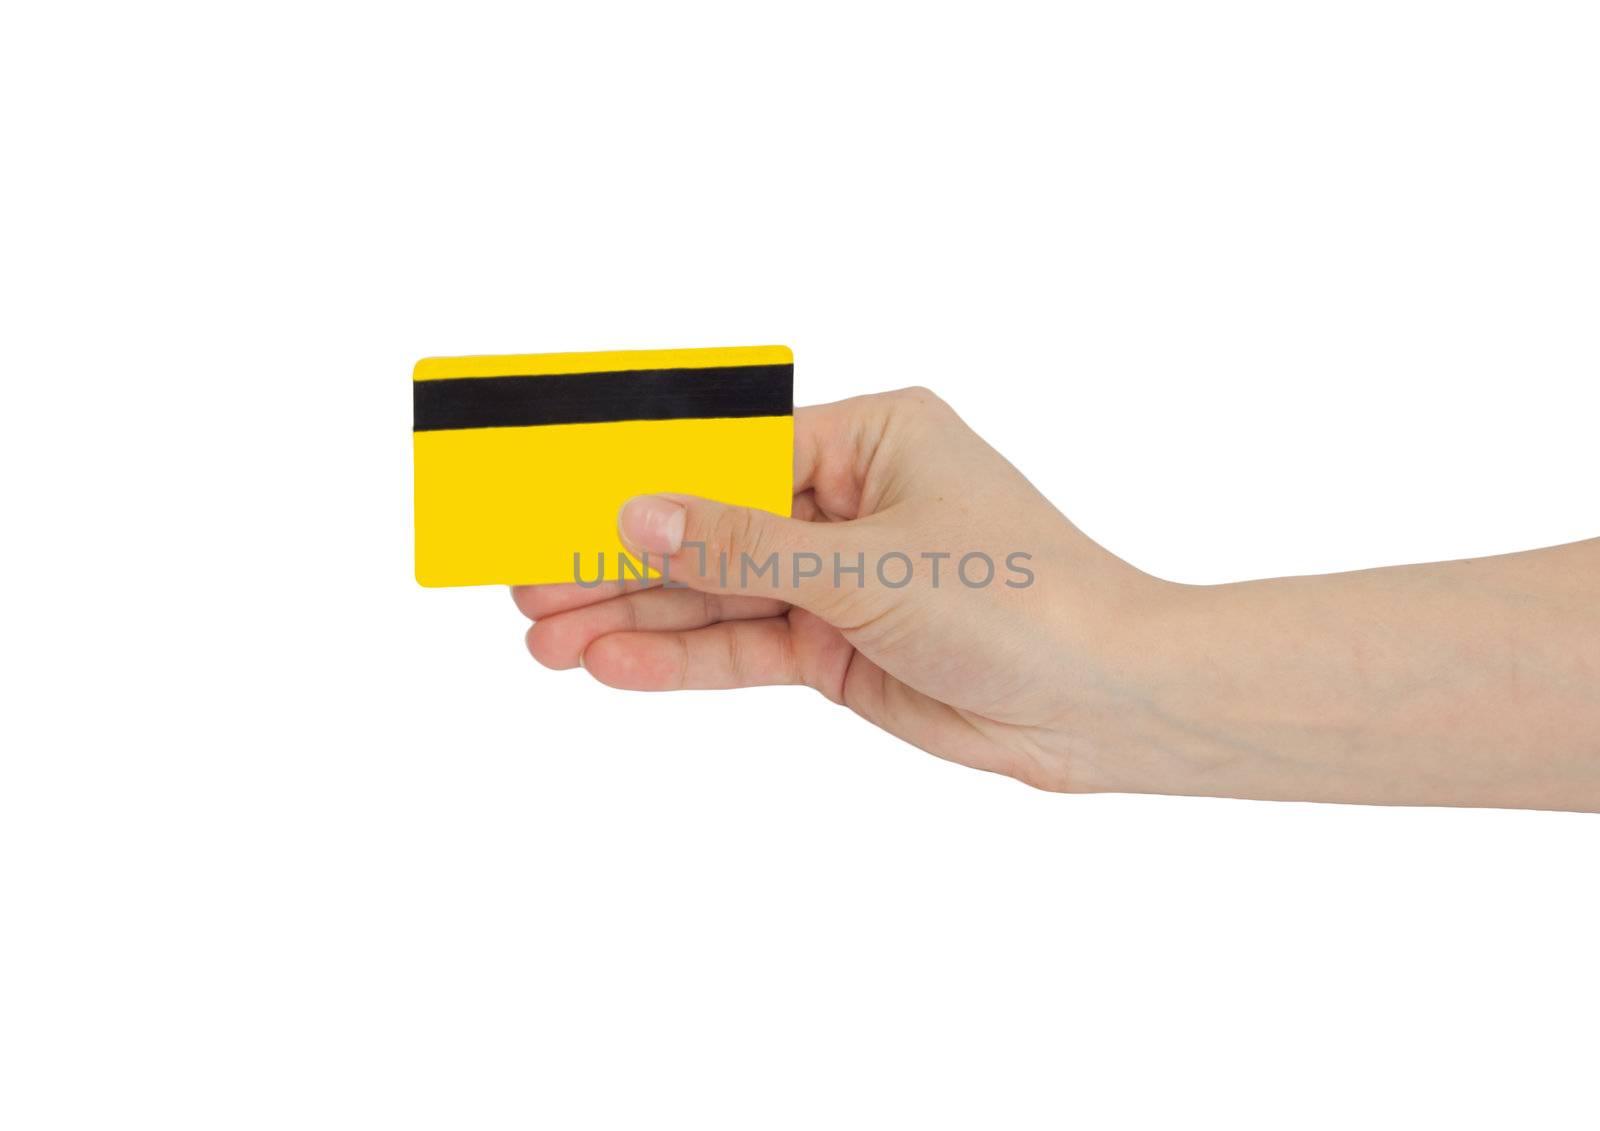 credit card in hand  by schankz